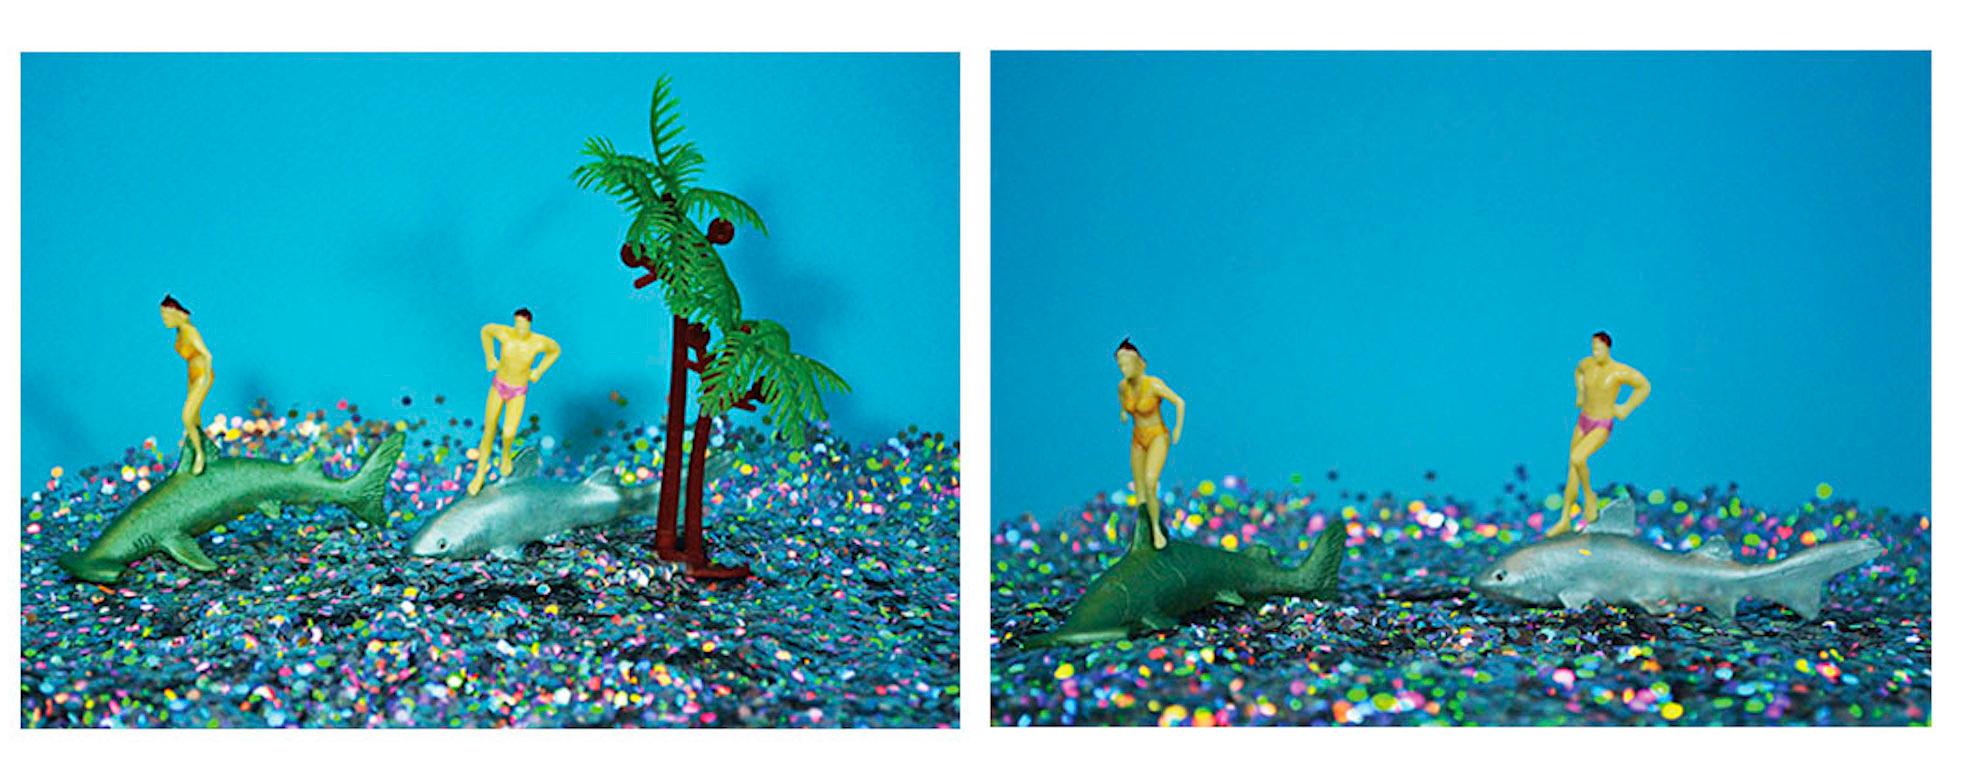 Tropicarios Installation aus der Serie Tropicarios von Paloma Castello
Digitaler Fotodruck auf Chroma Luxe.
7